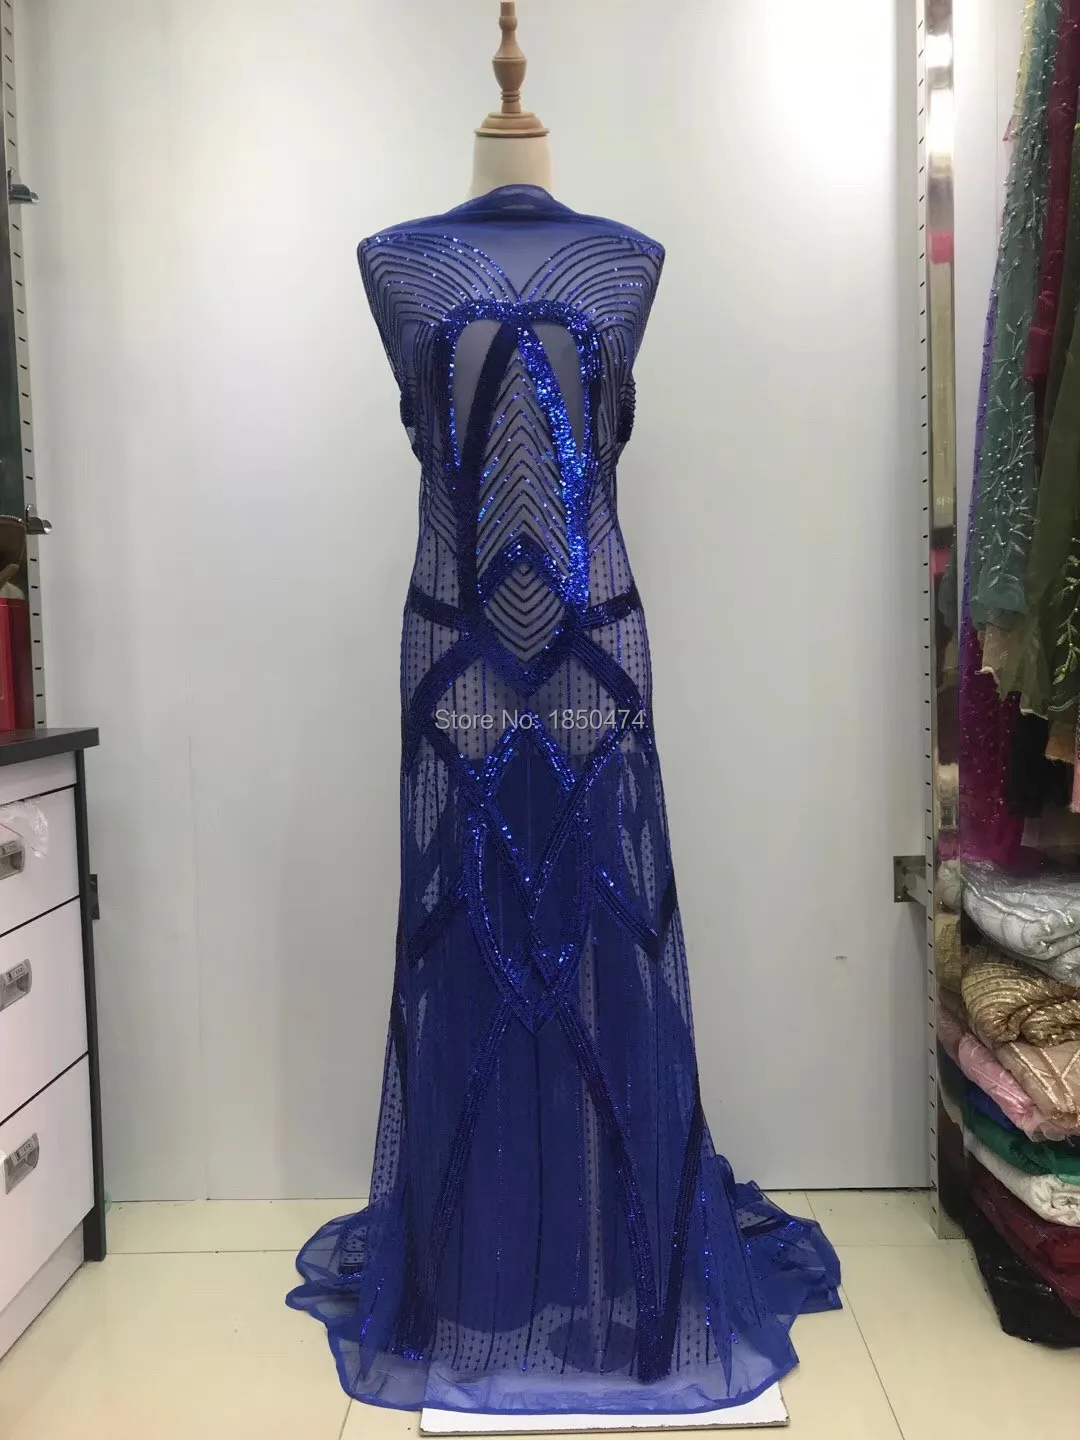 

Кружевное платье в африканском стиле с вышивкой и пайетками, кружевное платье из фатина, 11 цветов, оптовая продажа, 2019